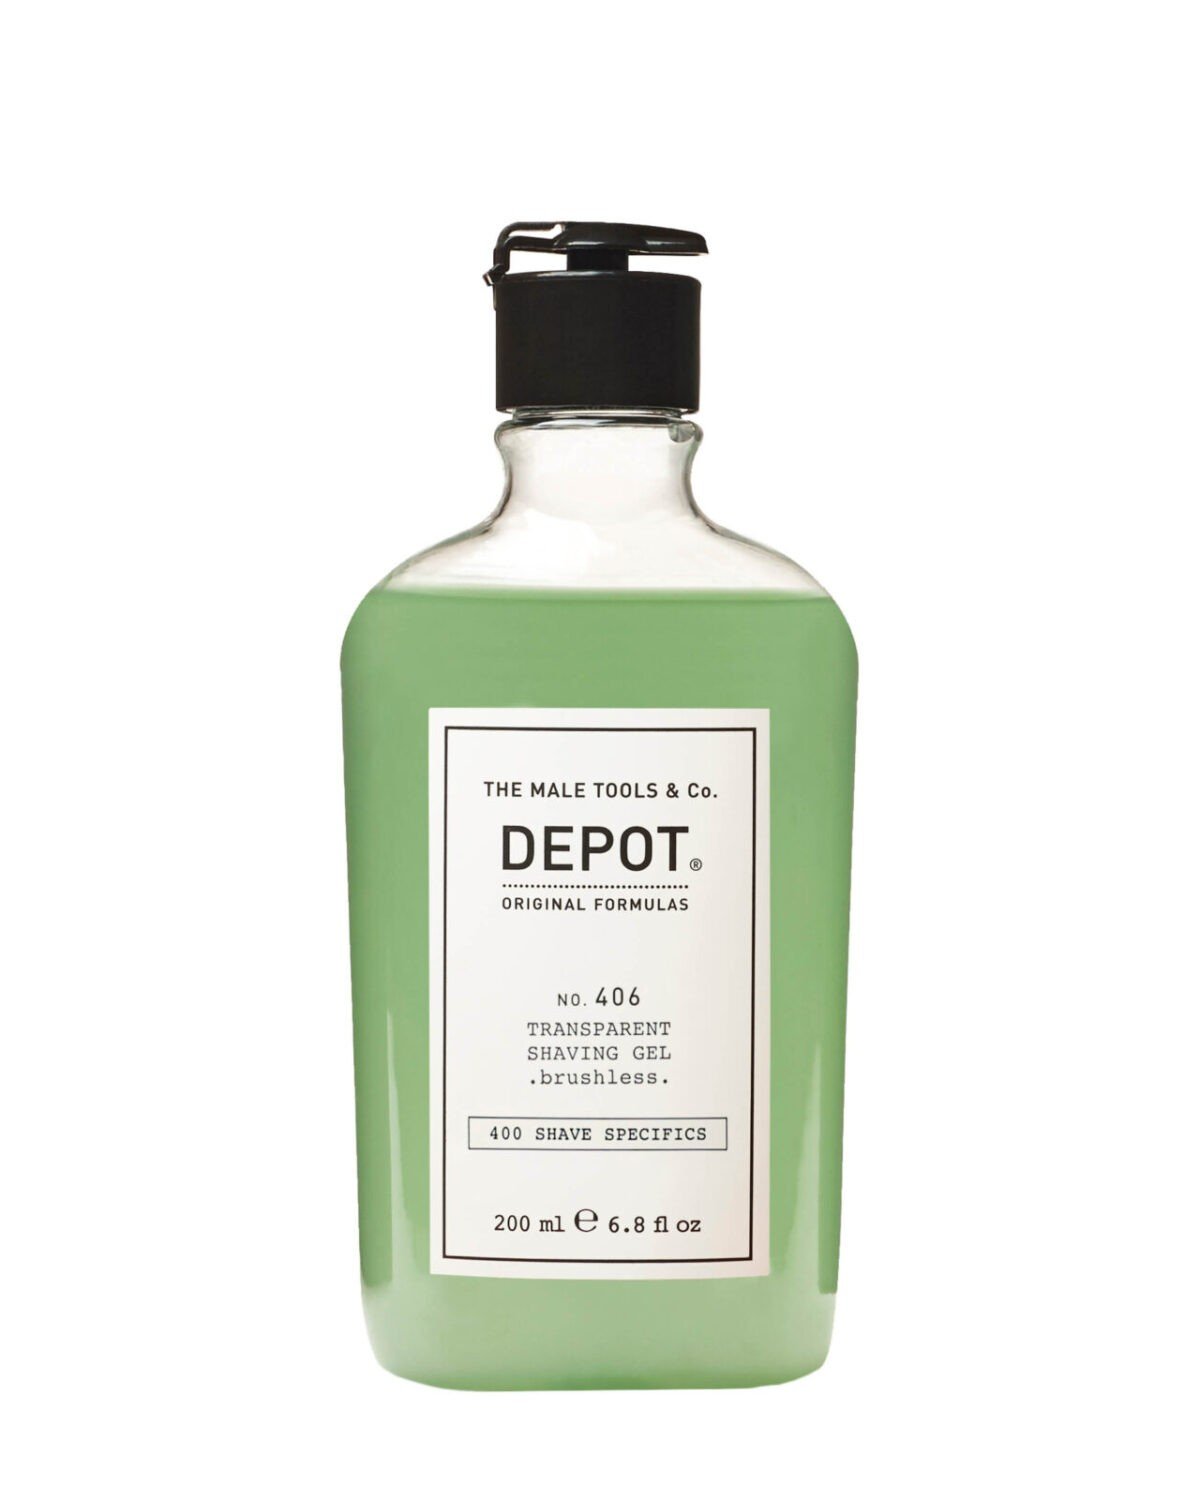 DEPOT 406 Transparent Shaving Gel - brushless